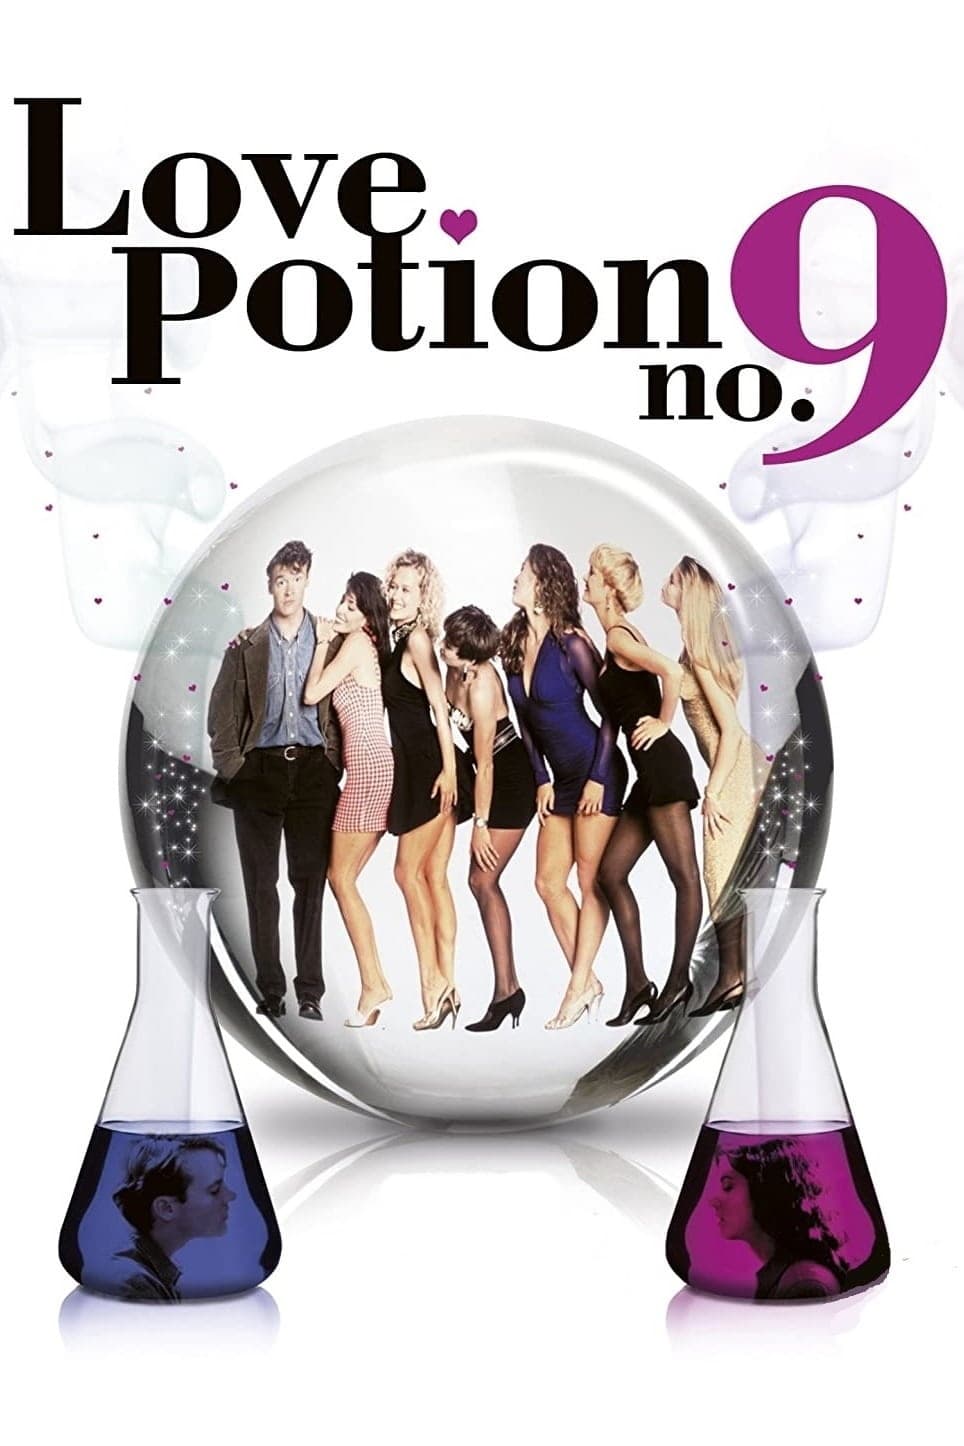 Любовный напиток номер 9. Love Potion no. 9 (1992). Любовный эликсир 9.